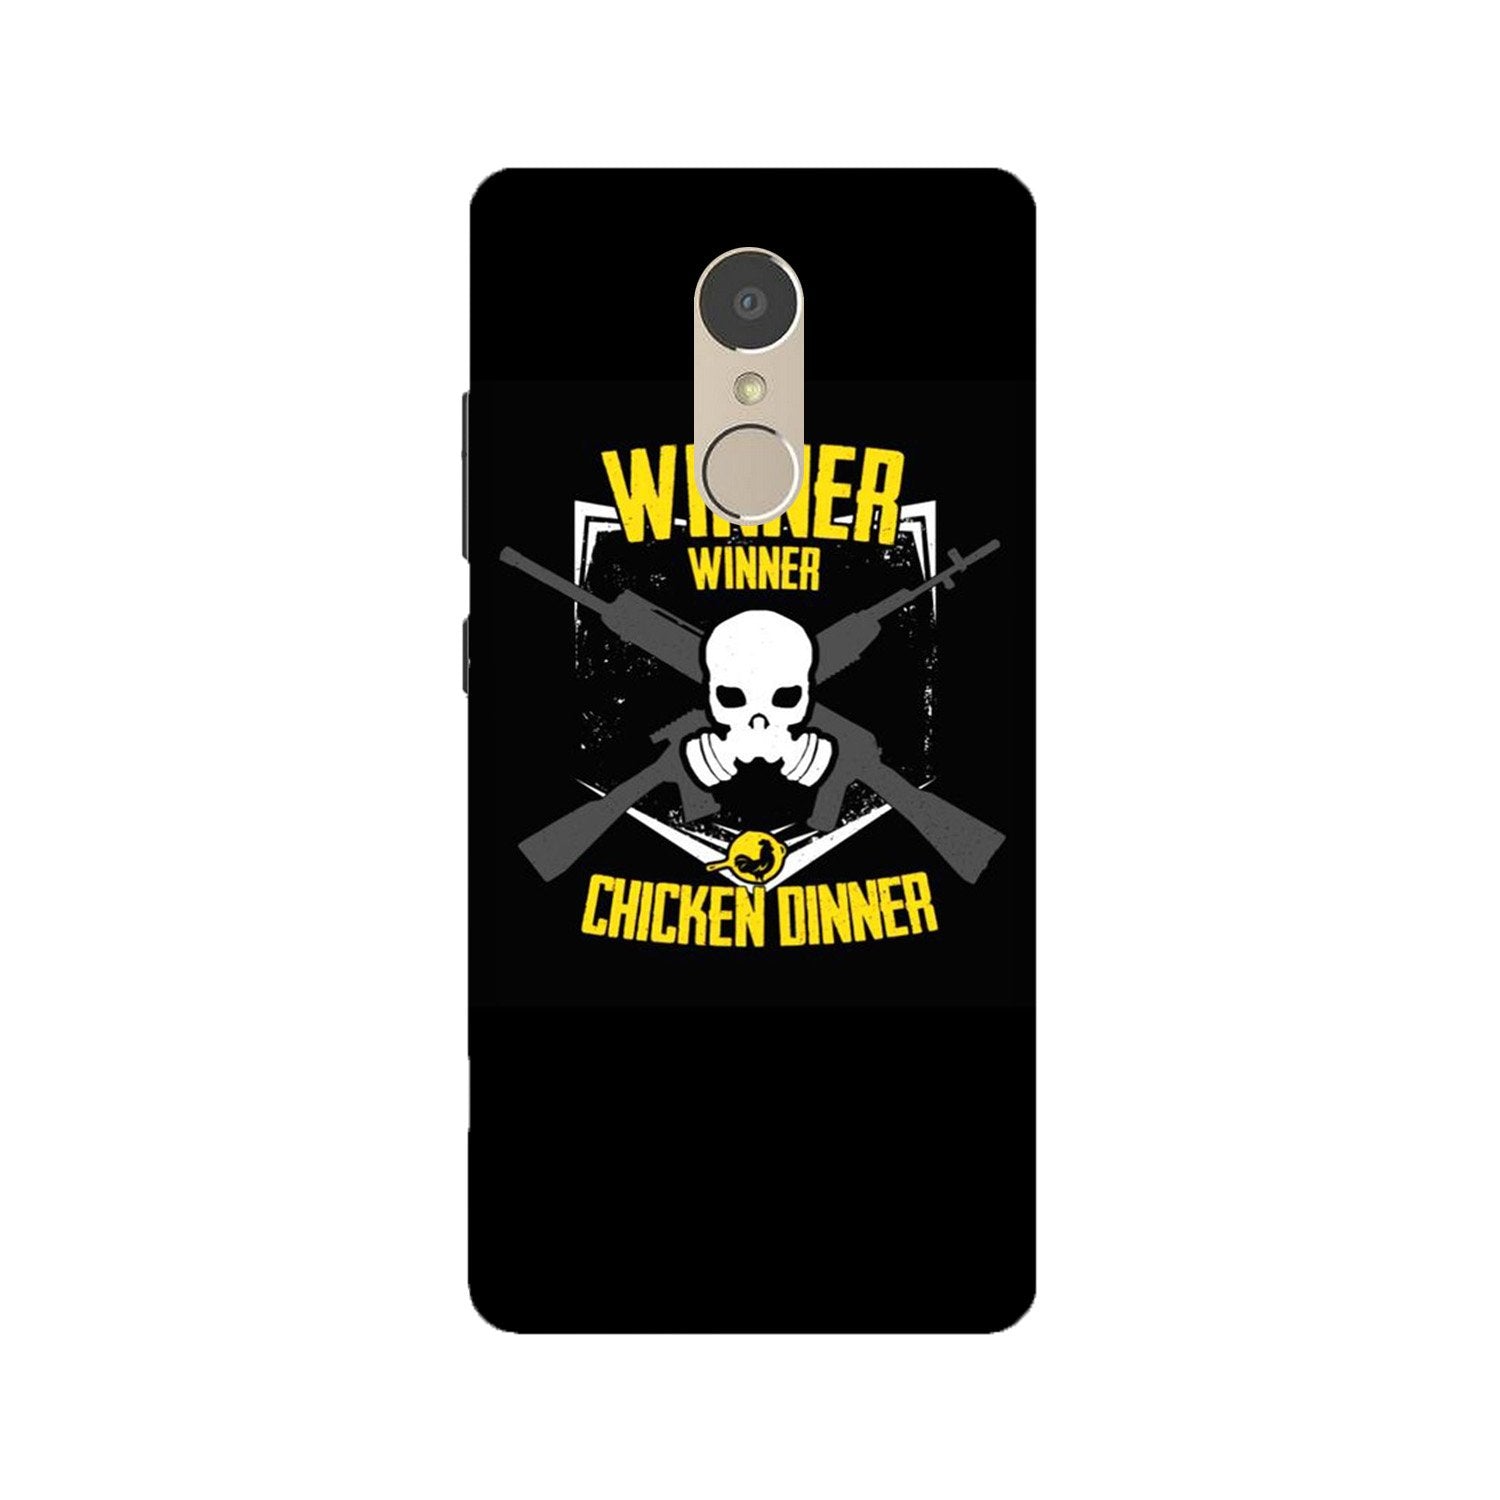 Winner Winner Chicken Dinner Case for Lenovo K6 Note(Design - 178)